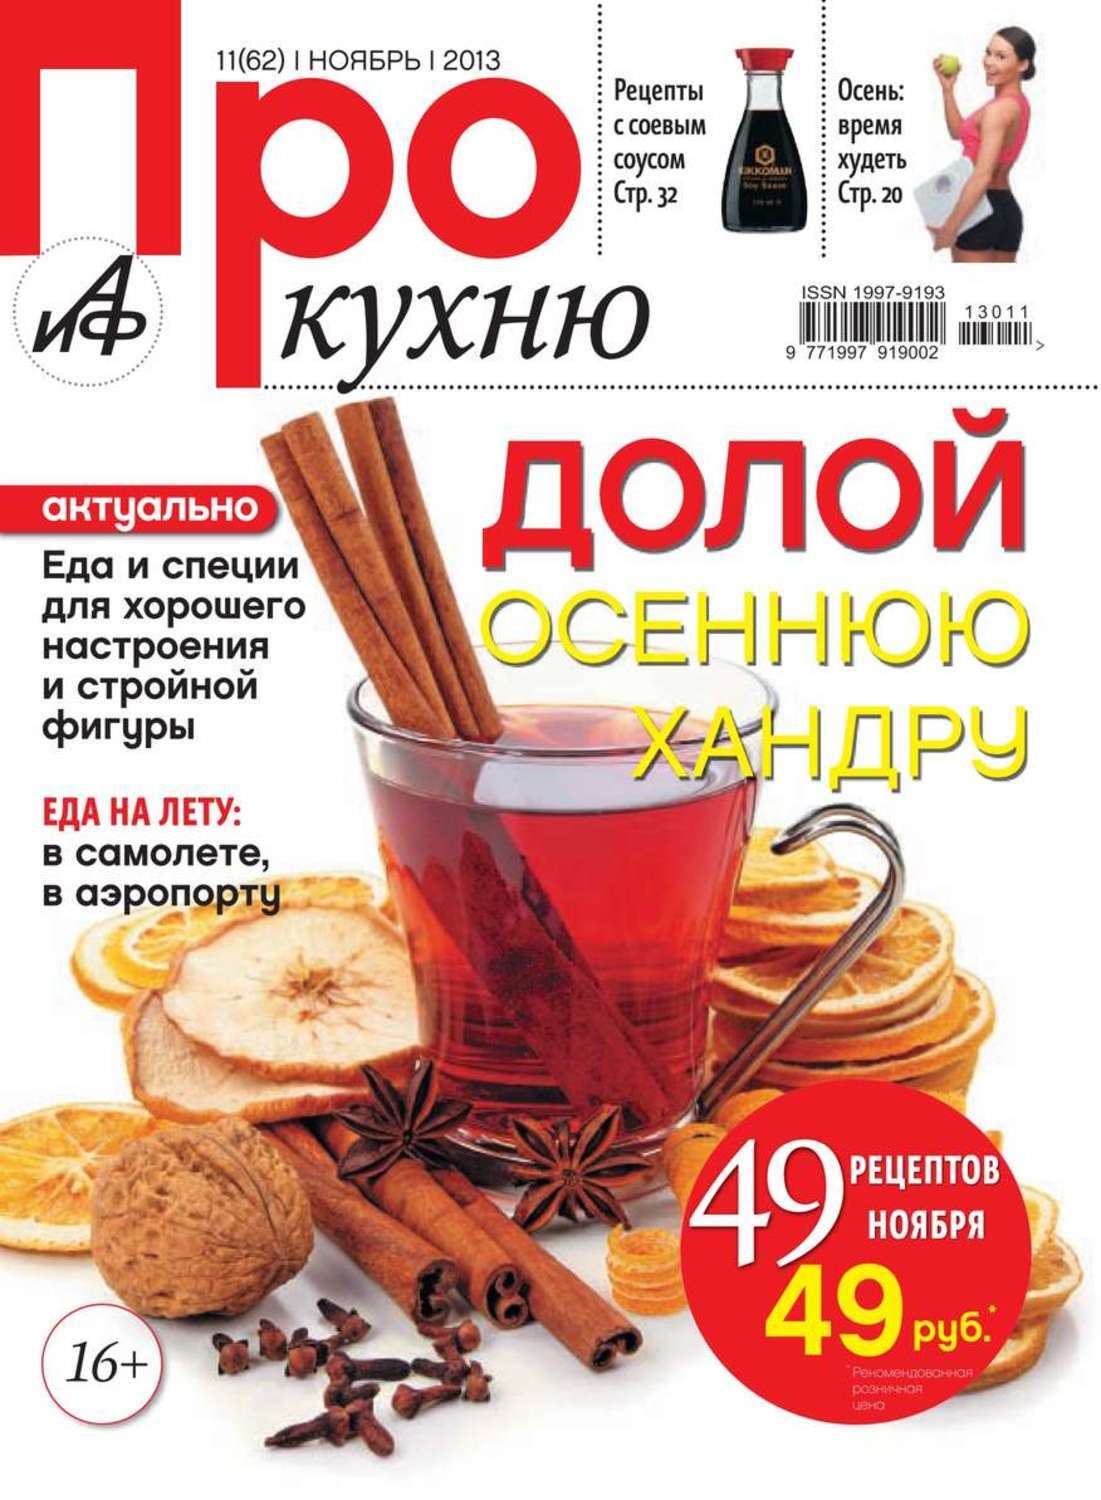 Про кухню ру. Про кухню журнал. Журнал АИФ про кухню. Журнал про кухню купить.